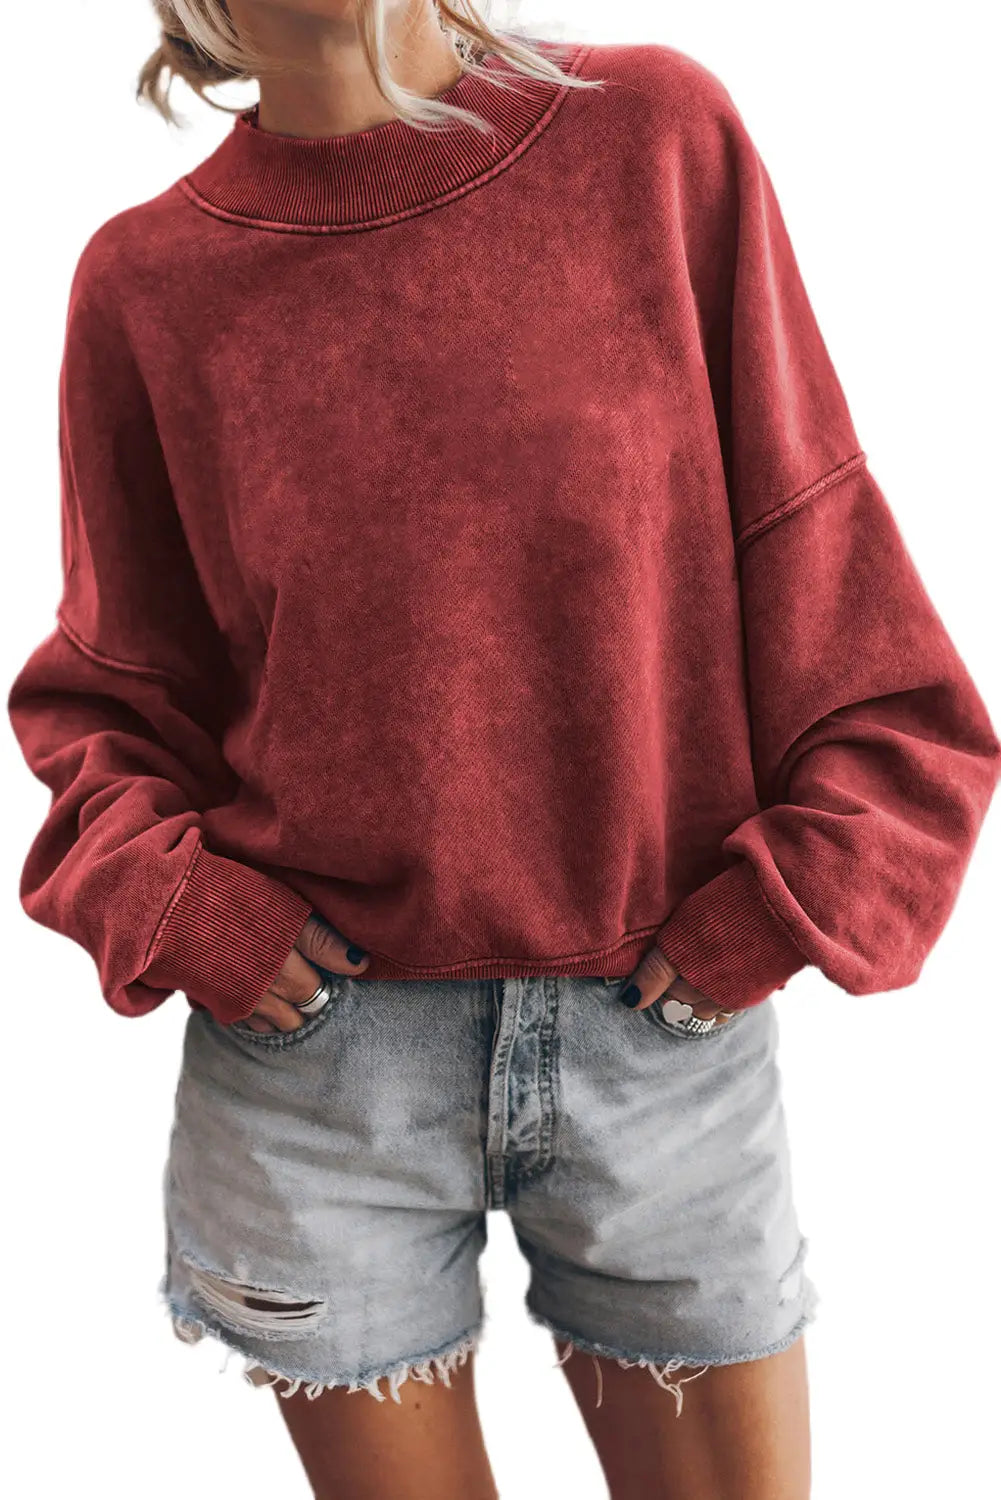 Red dahlia drop shoulder crew neck pullover sweatshirt - sweatshits & hoodies